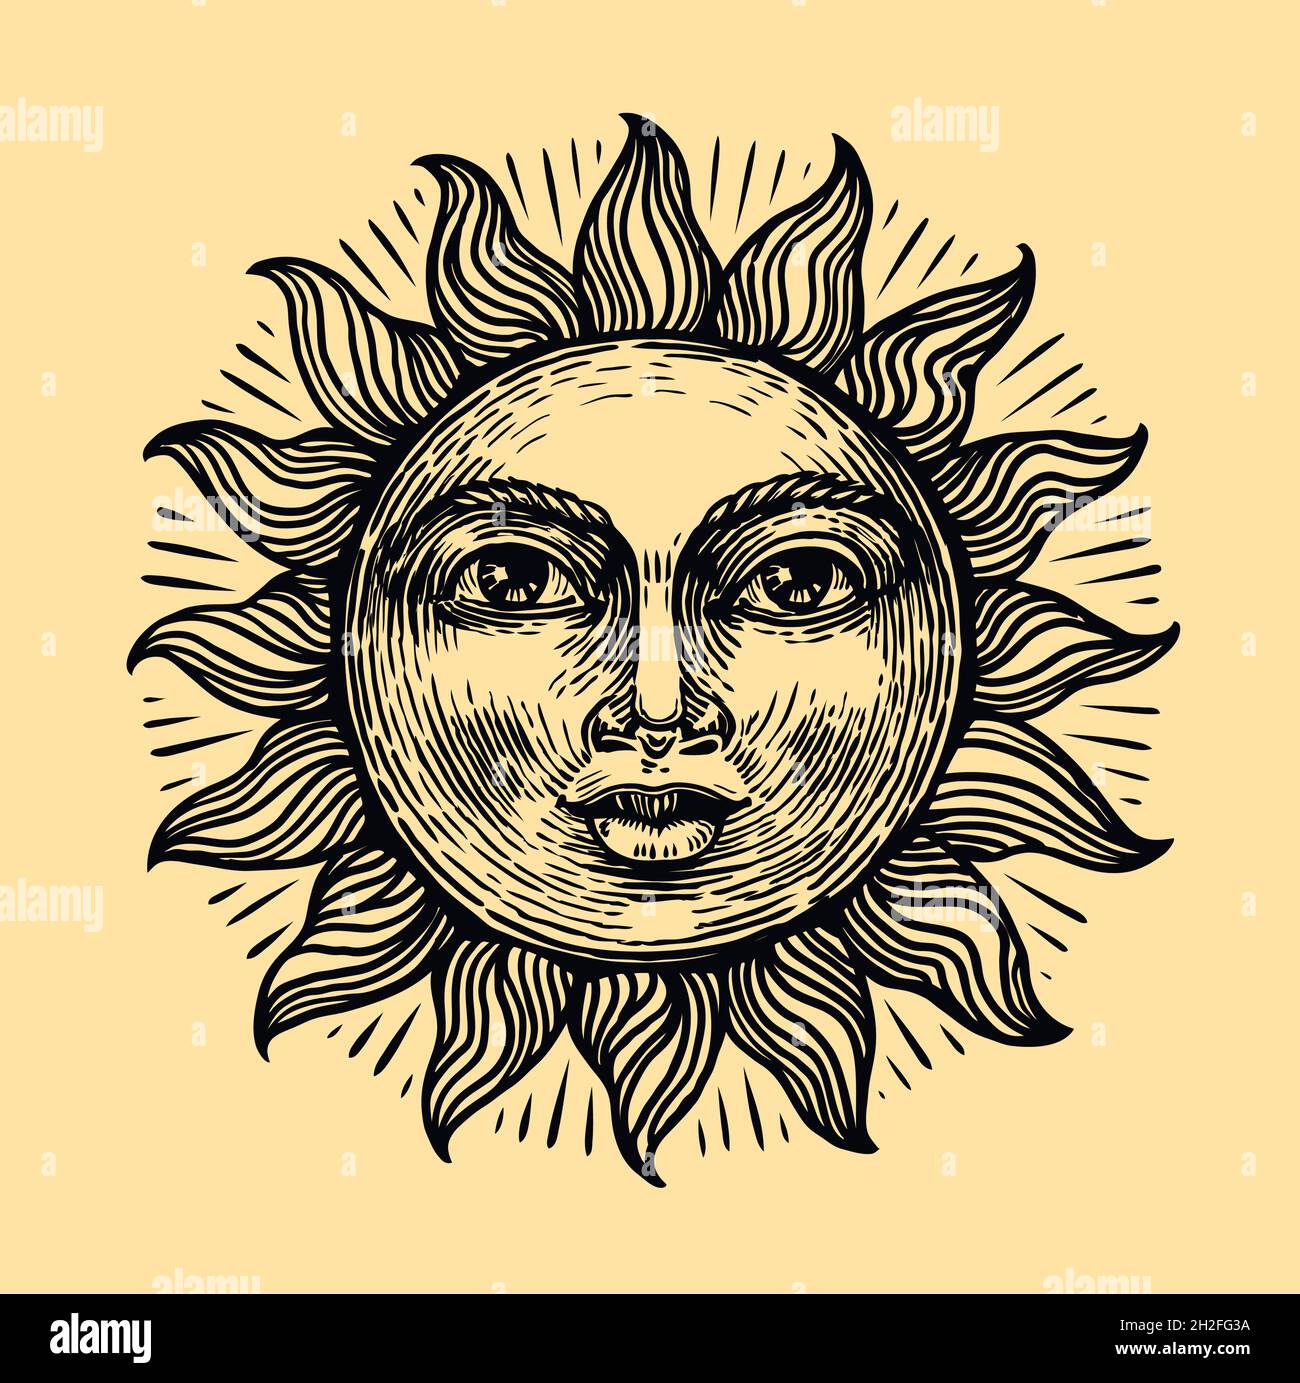 Sole con faccia. Schizzo del simbolo di astrologia. Illustrazione vettoriale vintage disegnata a mano in stile incisione Illustrazione Vettoriale